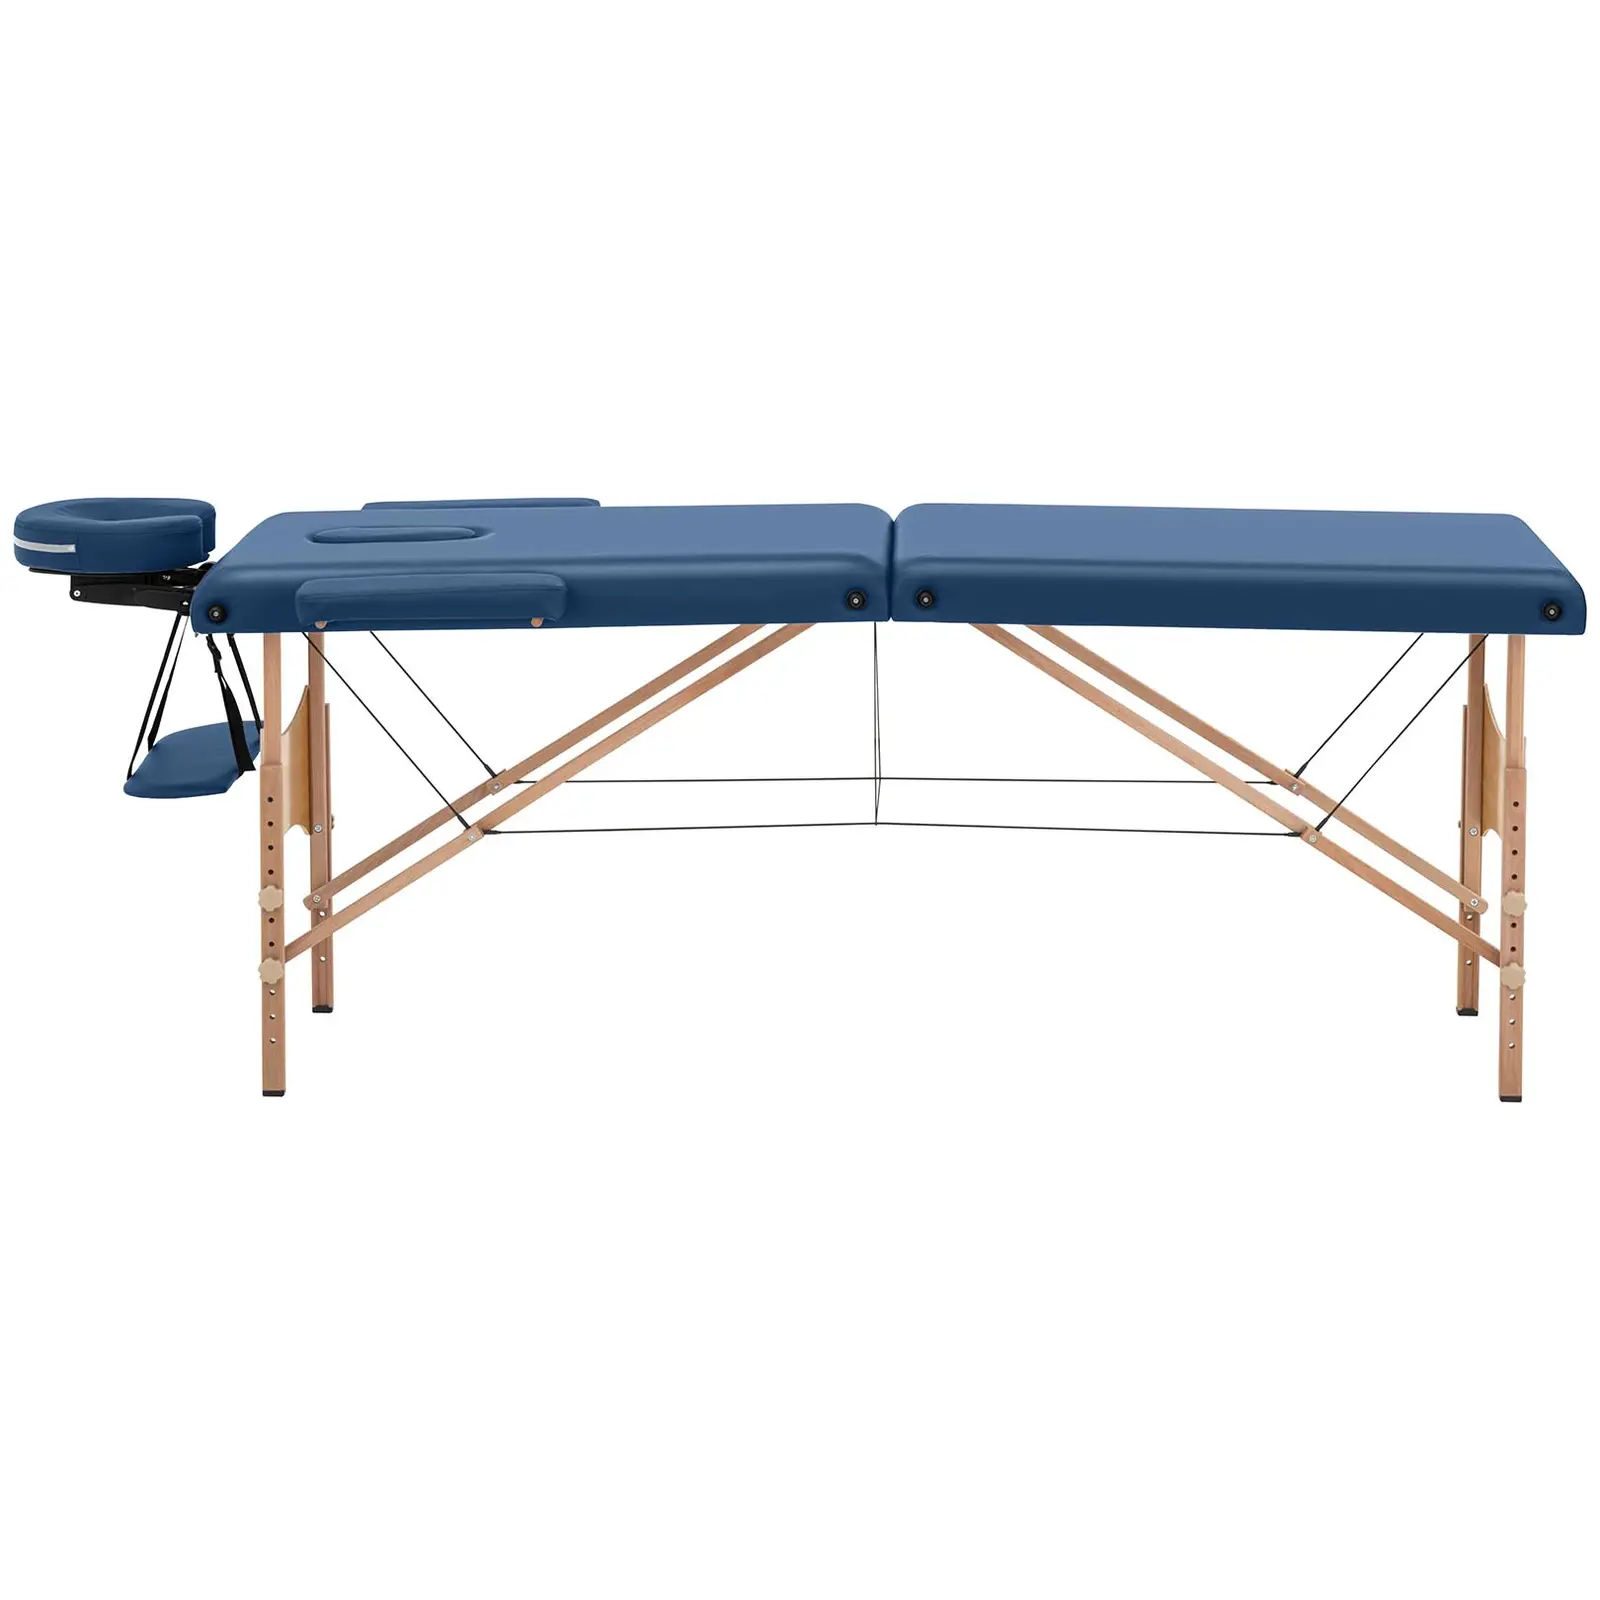 Składany stół do masażu - 185 x 60 x 63-86 cm - 227 kg - Niebieski